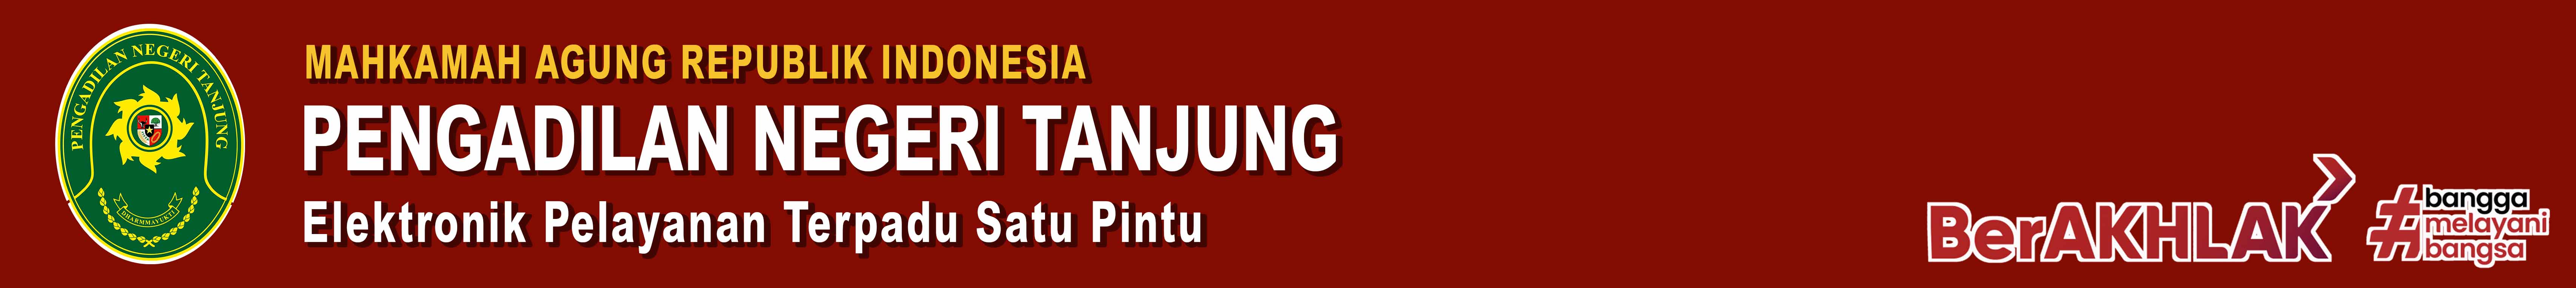 ePTSP Pengadilan Negeri Tanjung